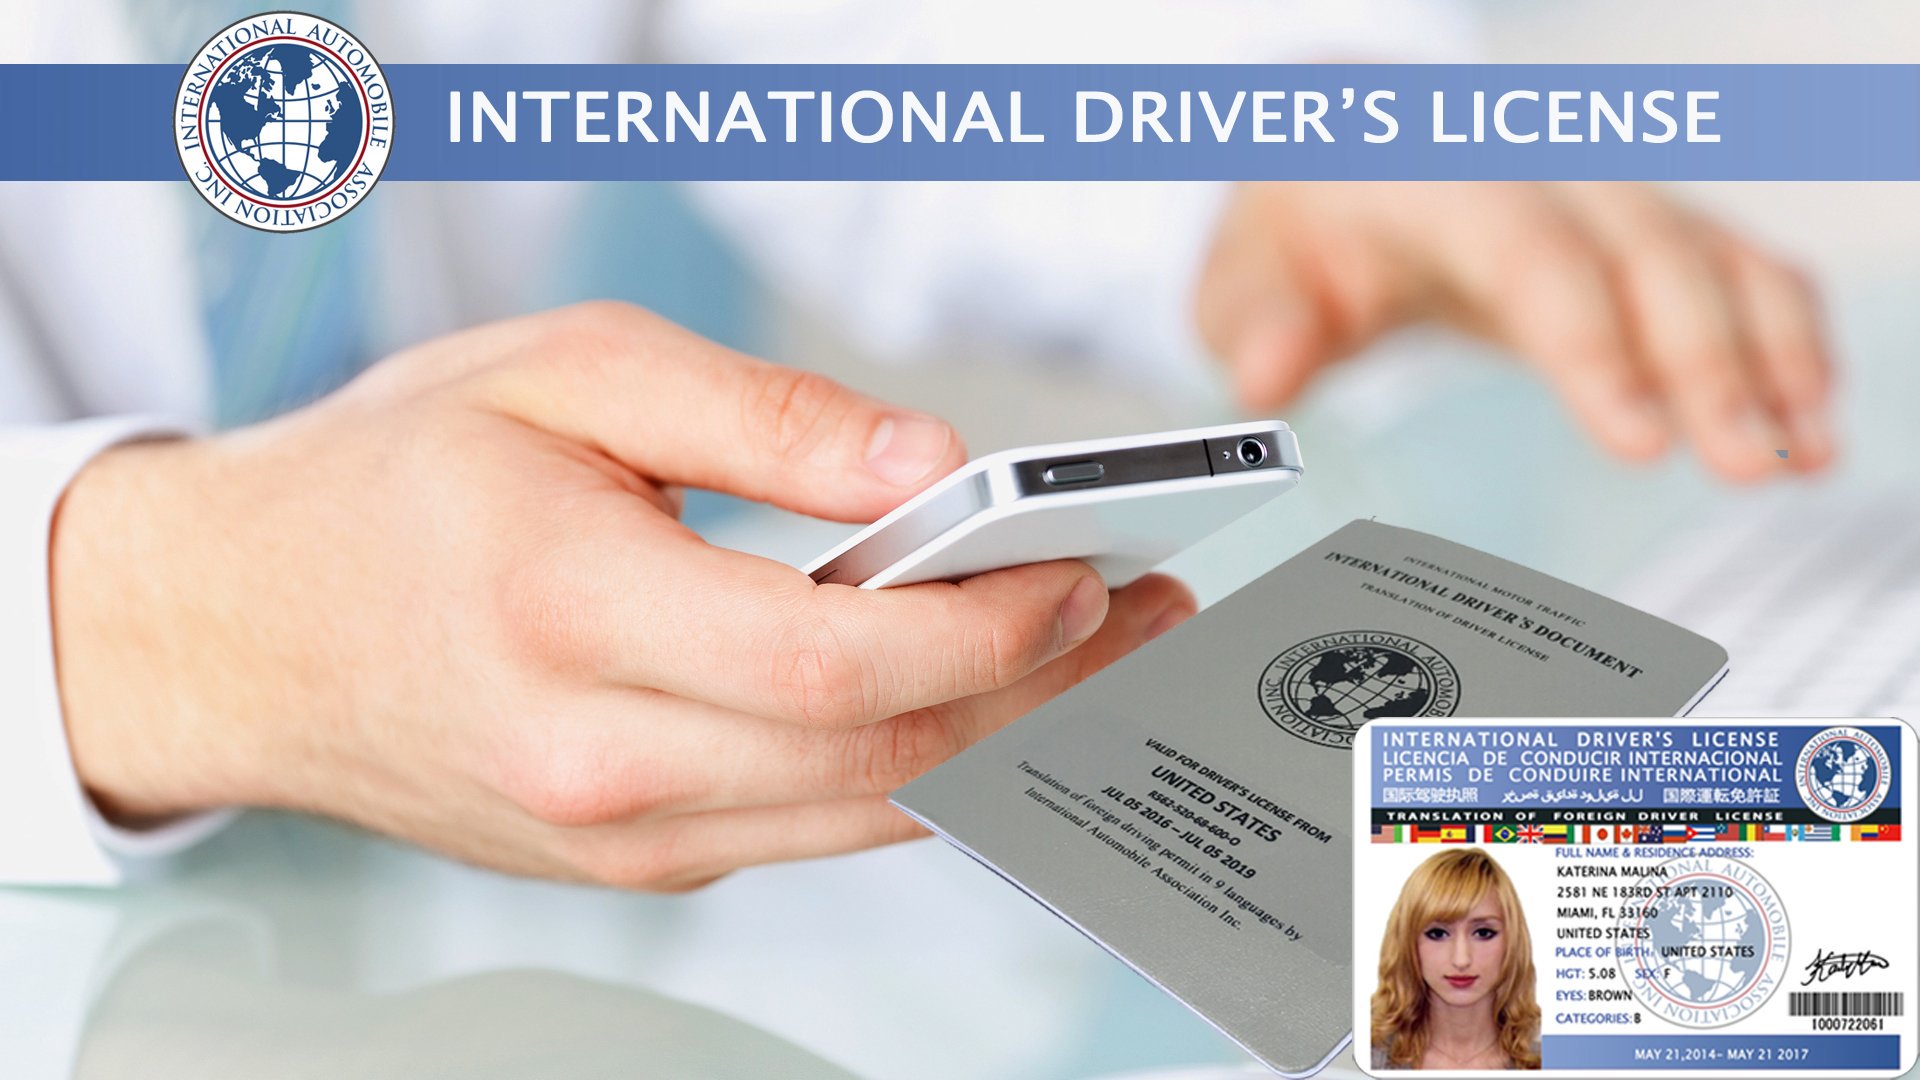 Hướng dẫn cấp đổi bằng lái xe quốc tế tại Vĩnh Phúc online - Điện thoại: 0932 100 040